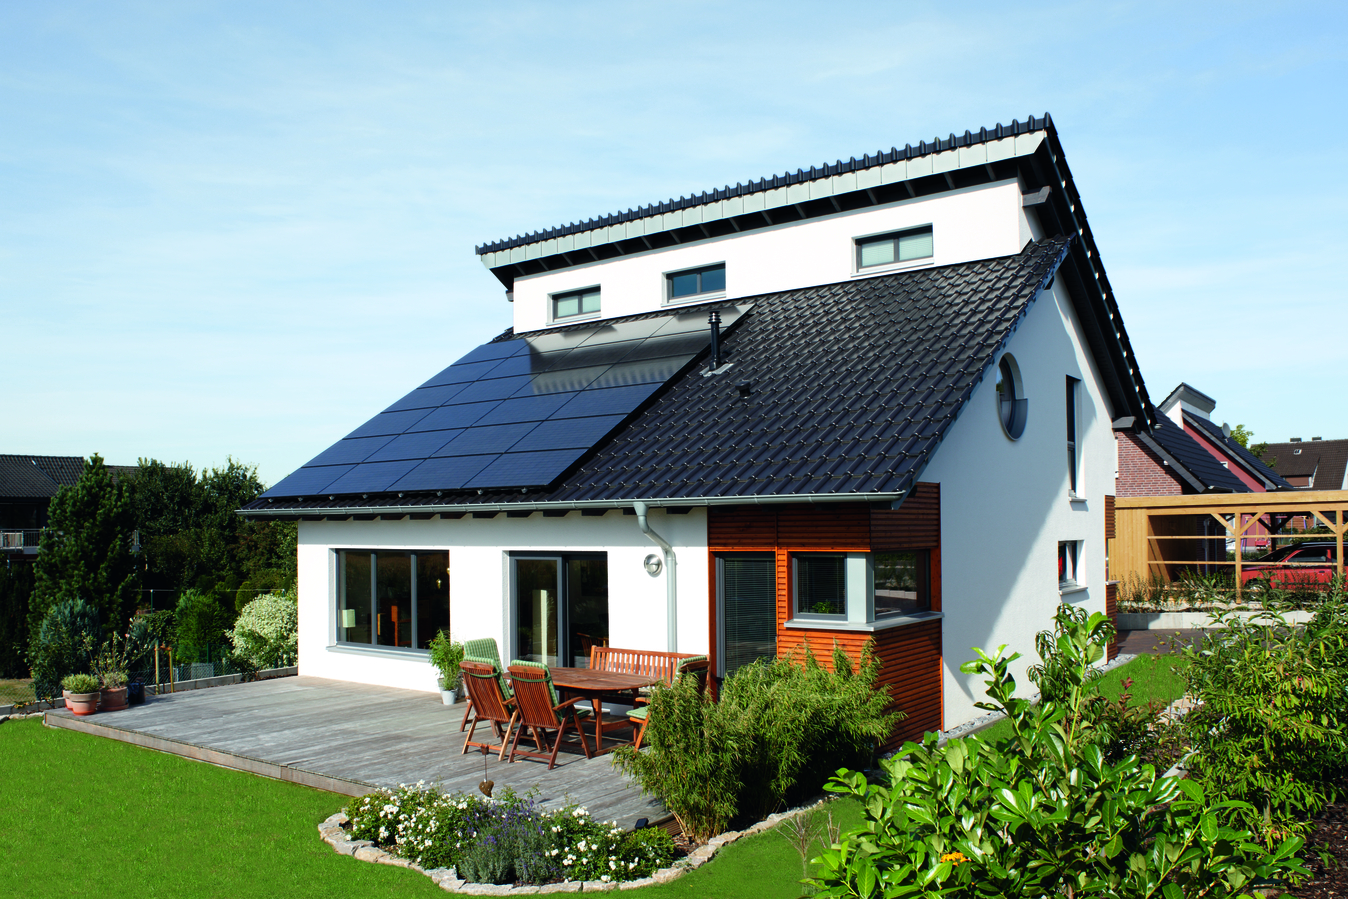 Domácí solární elektrárna - jaké výhody přináší solární energie pro domácnosti?